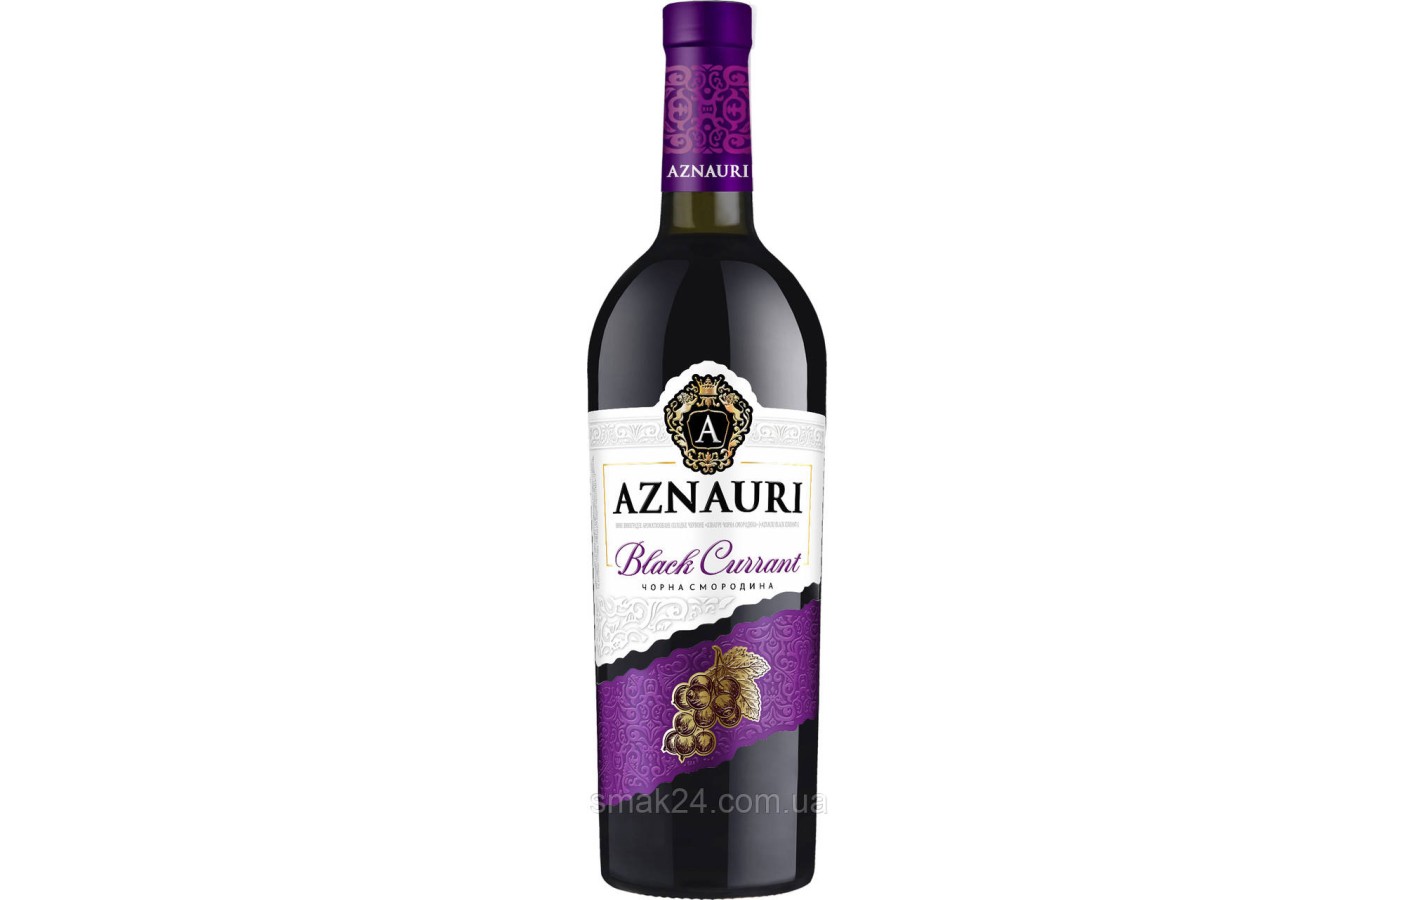 Вино виноградное ароматизированное Черная Смородина Aznauri Black Currant красное сладкое 0,75л Украина